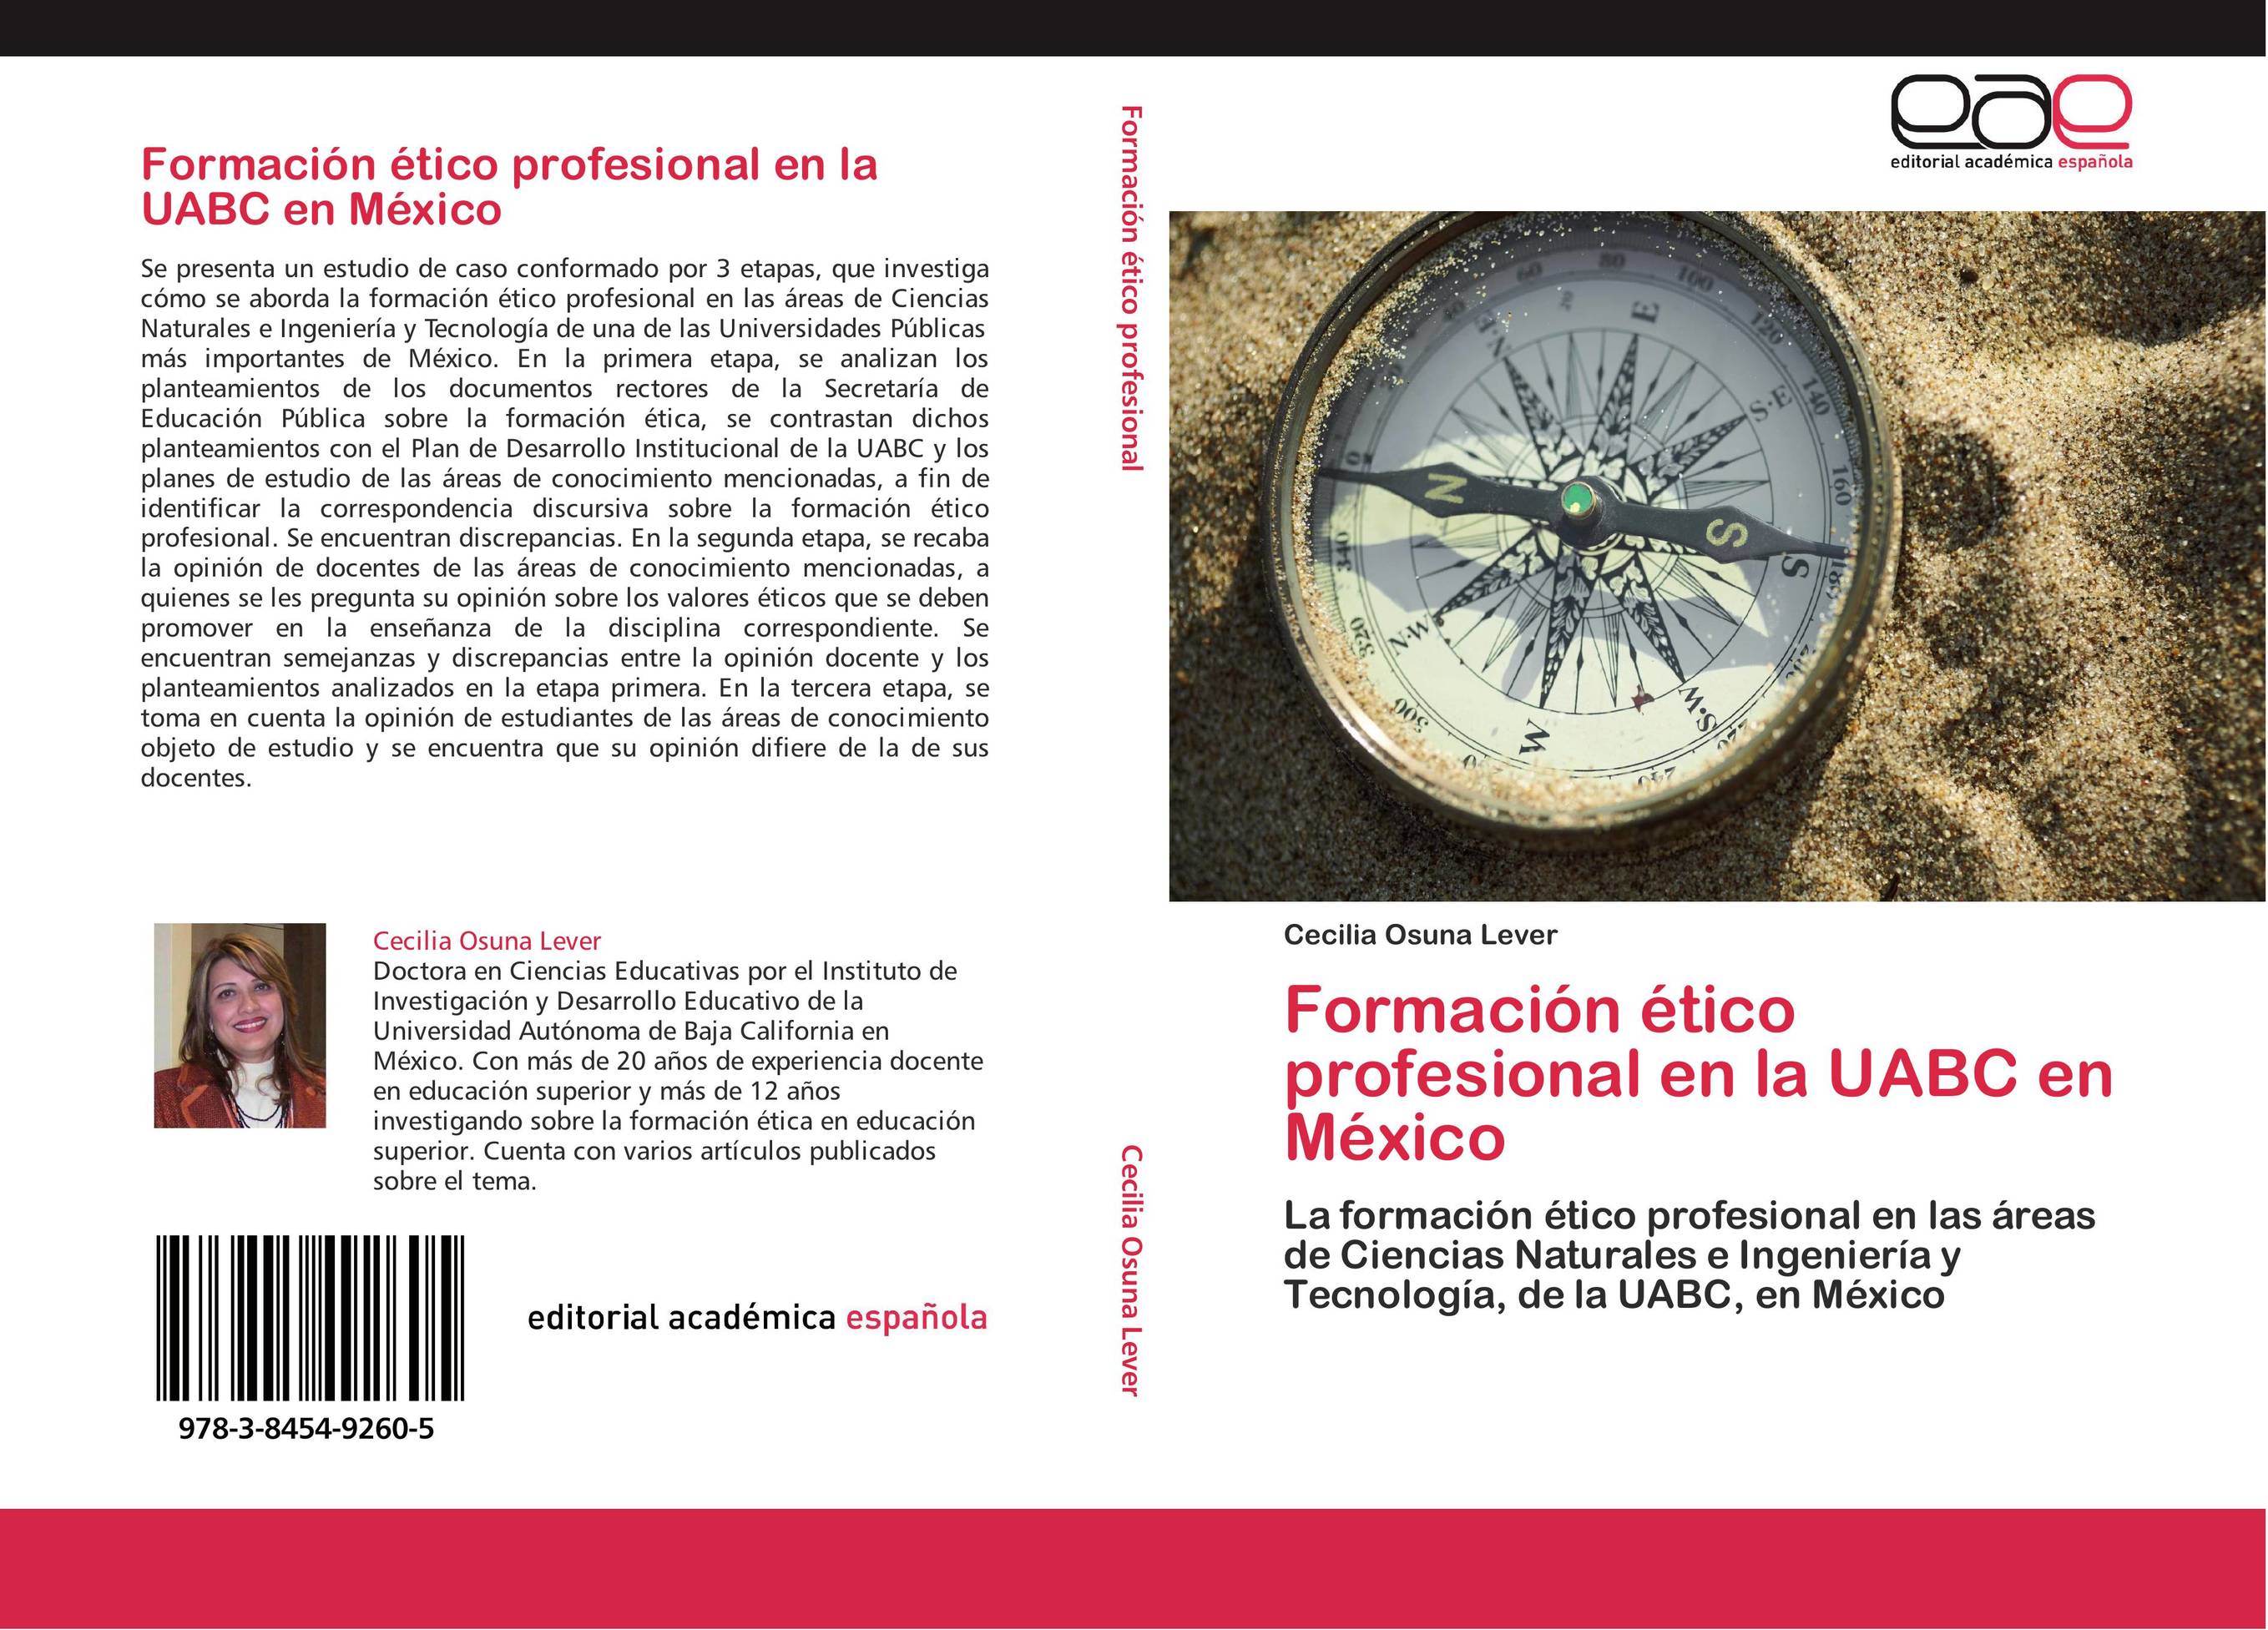 Formación ético profesional en la UABC en México